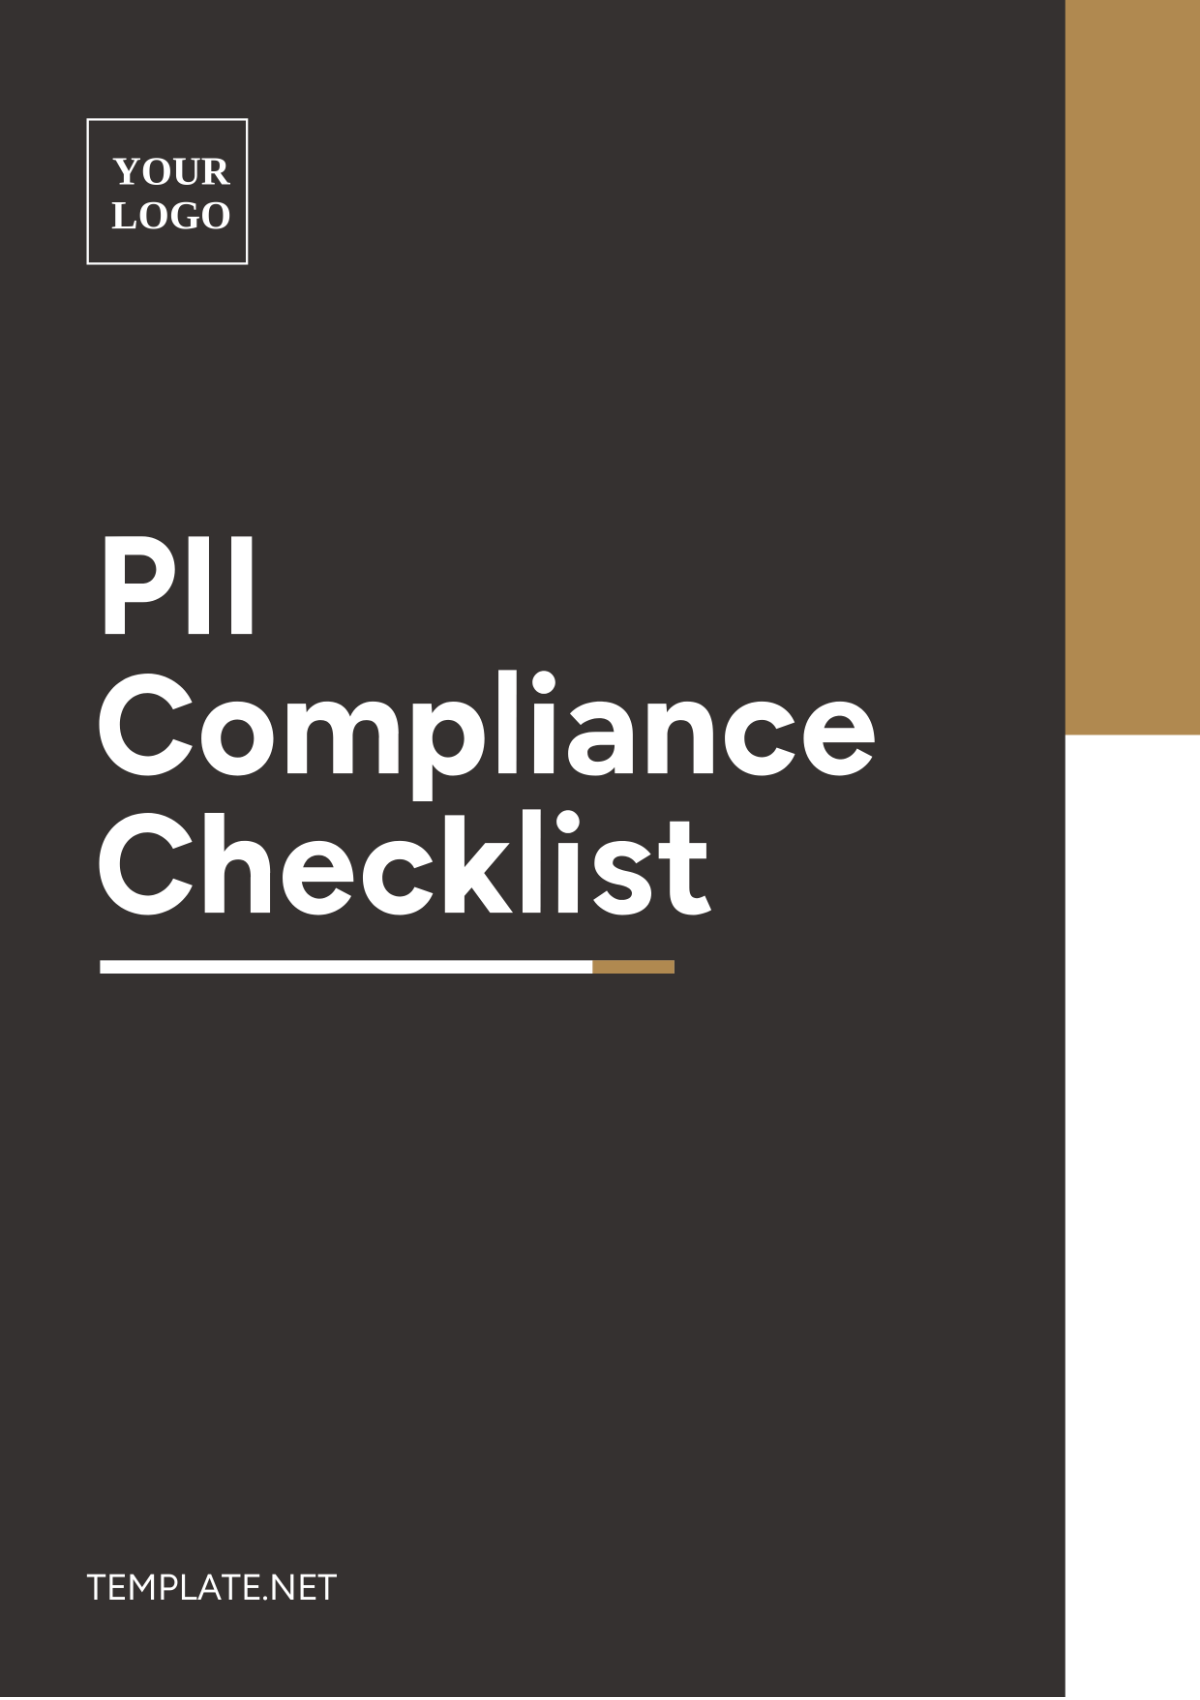 PII Compliance Checklist Template